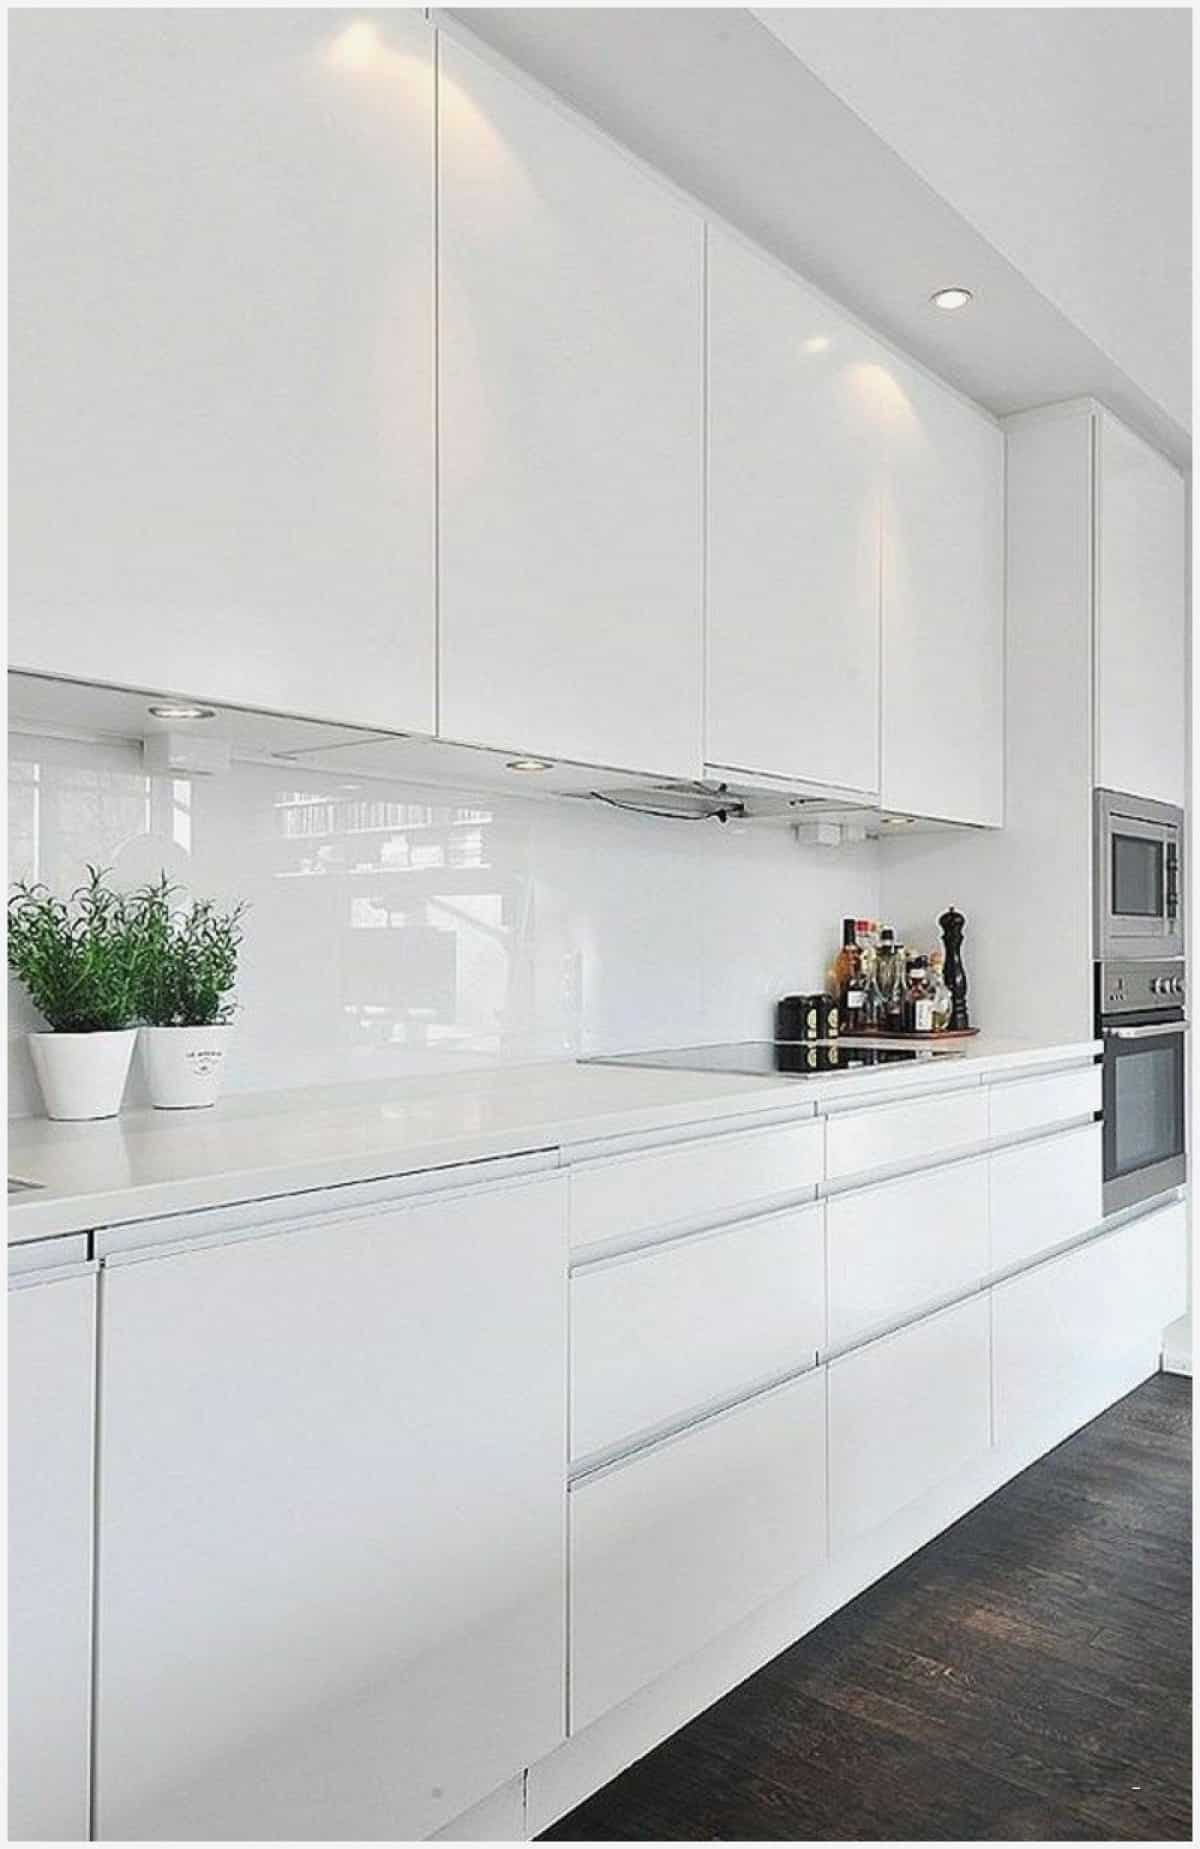 simple kitchen design